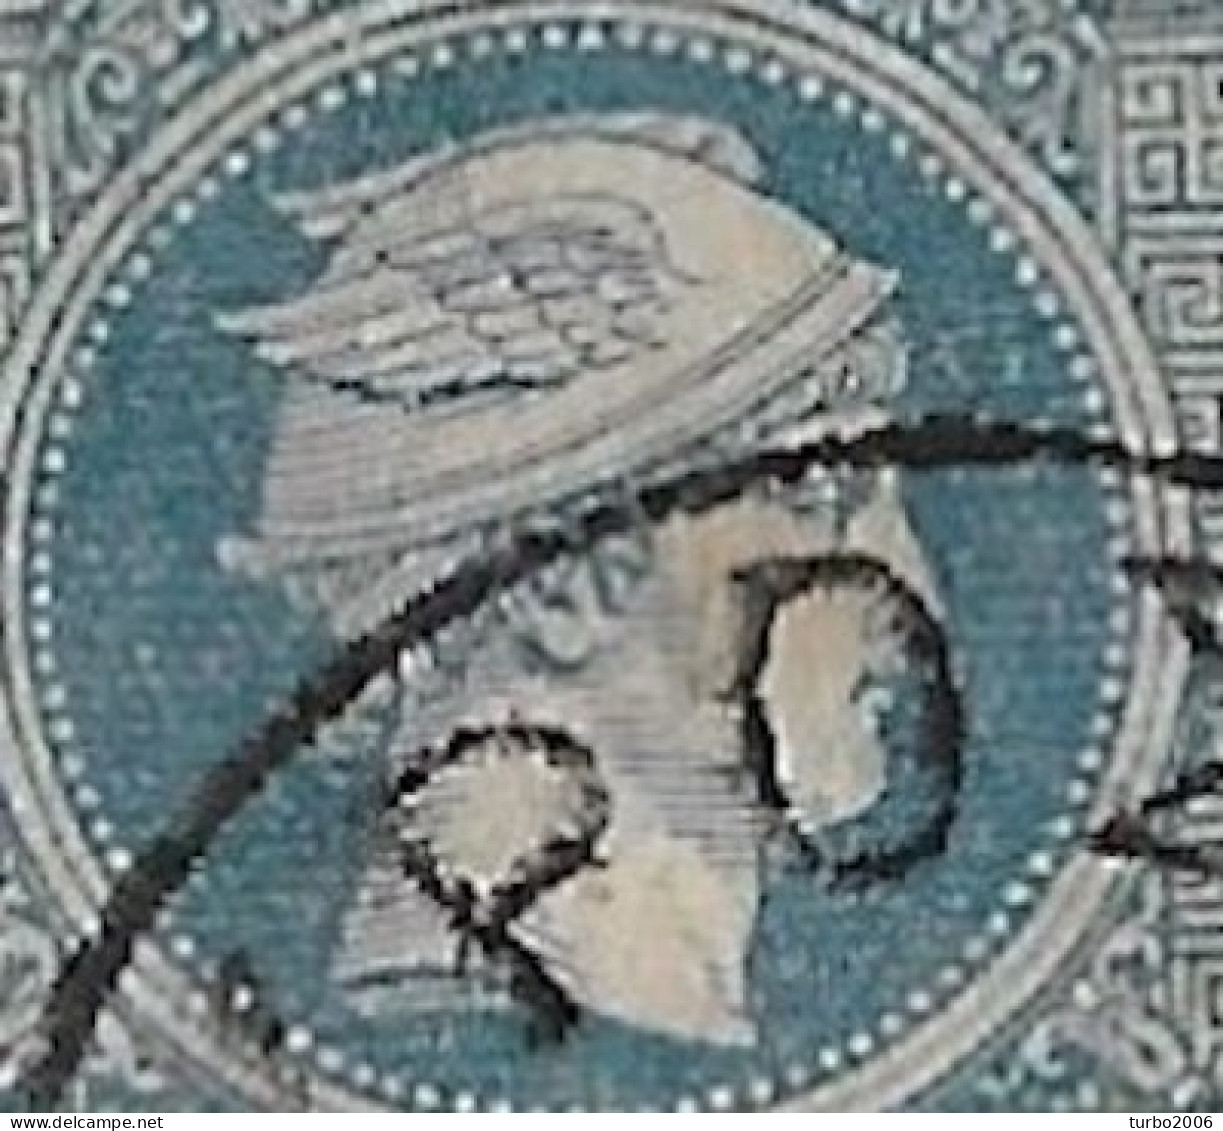 GREECE 1886-1888 Small Hermes Head Belgian Print Scarce 25 L Blue Quadrille Background Vl. 81 B - Oblitérés